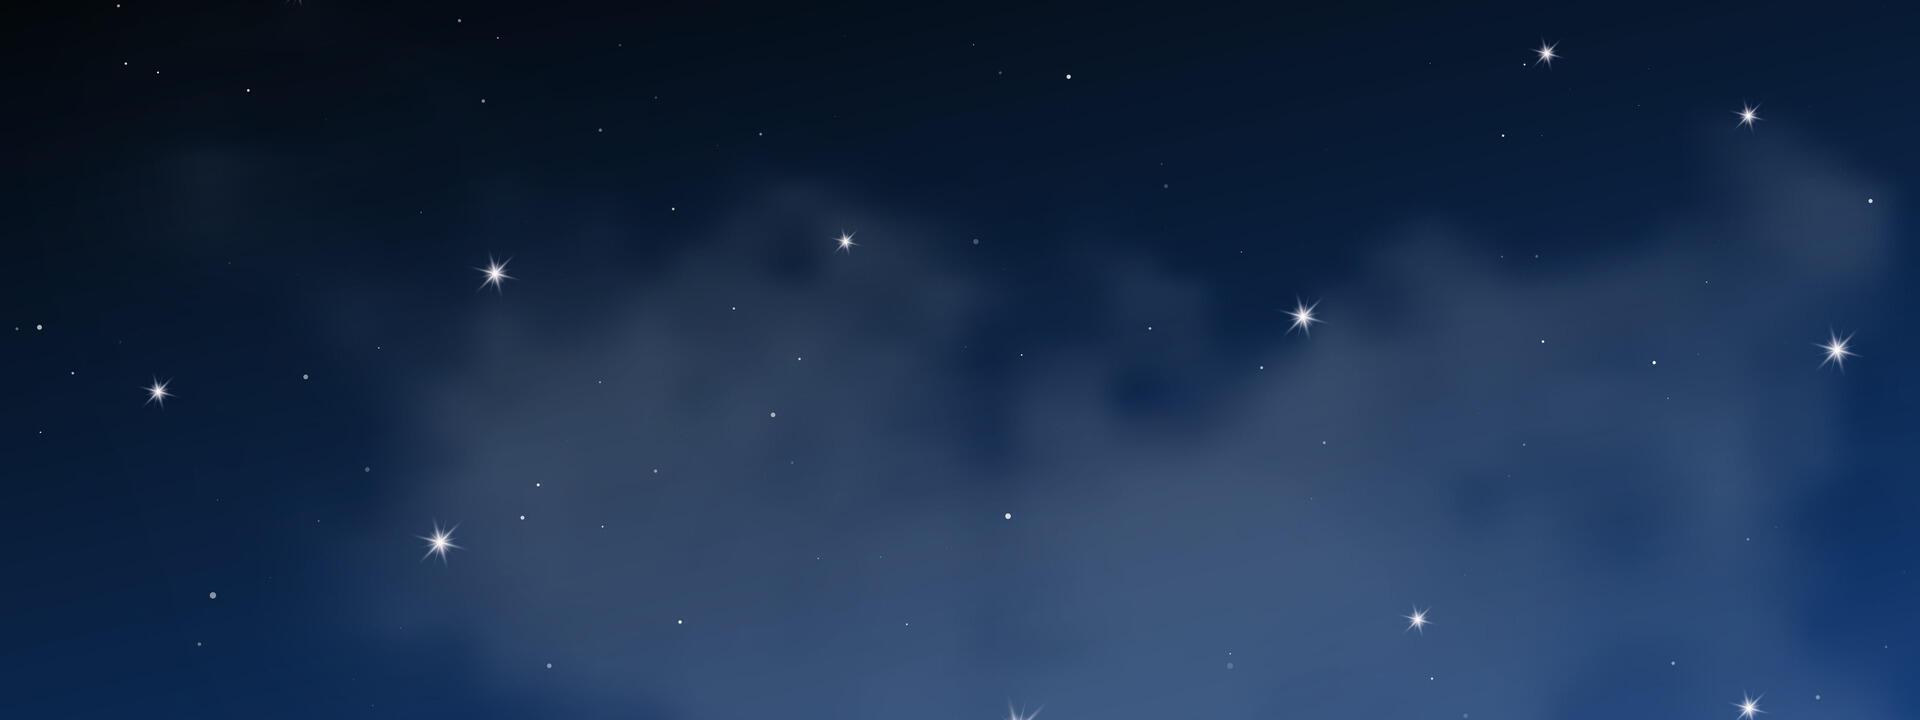 noche cielo con nubes y muchos estrellas vector